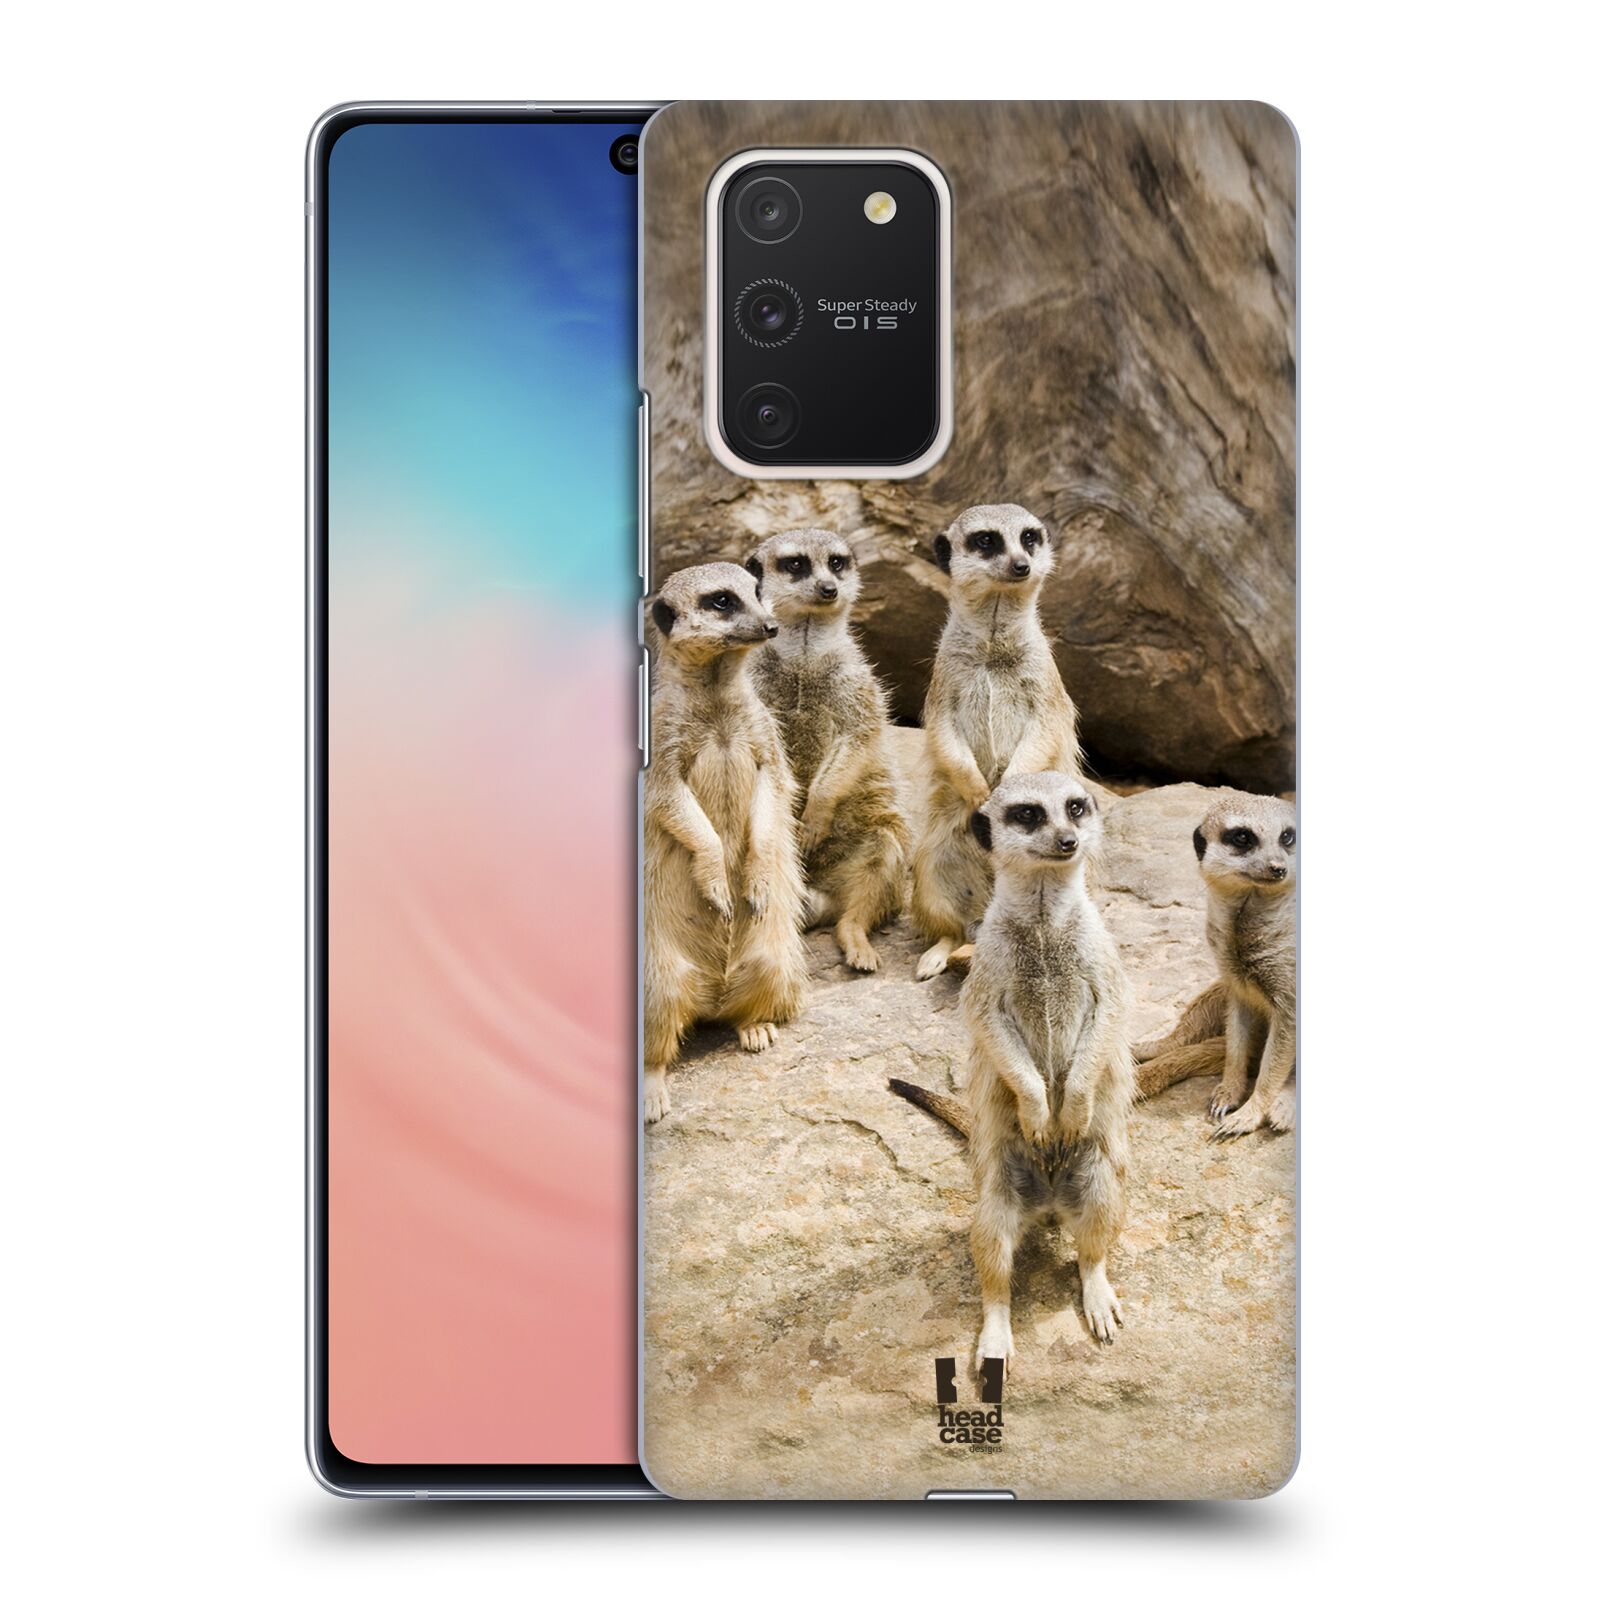 Zadní obal pro mobil Samsung Galaxy S10 LITE - HEAD CASE - Svět zvířat roztomilé surikaty